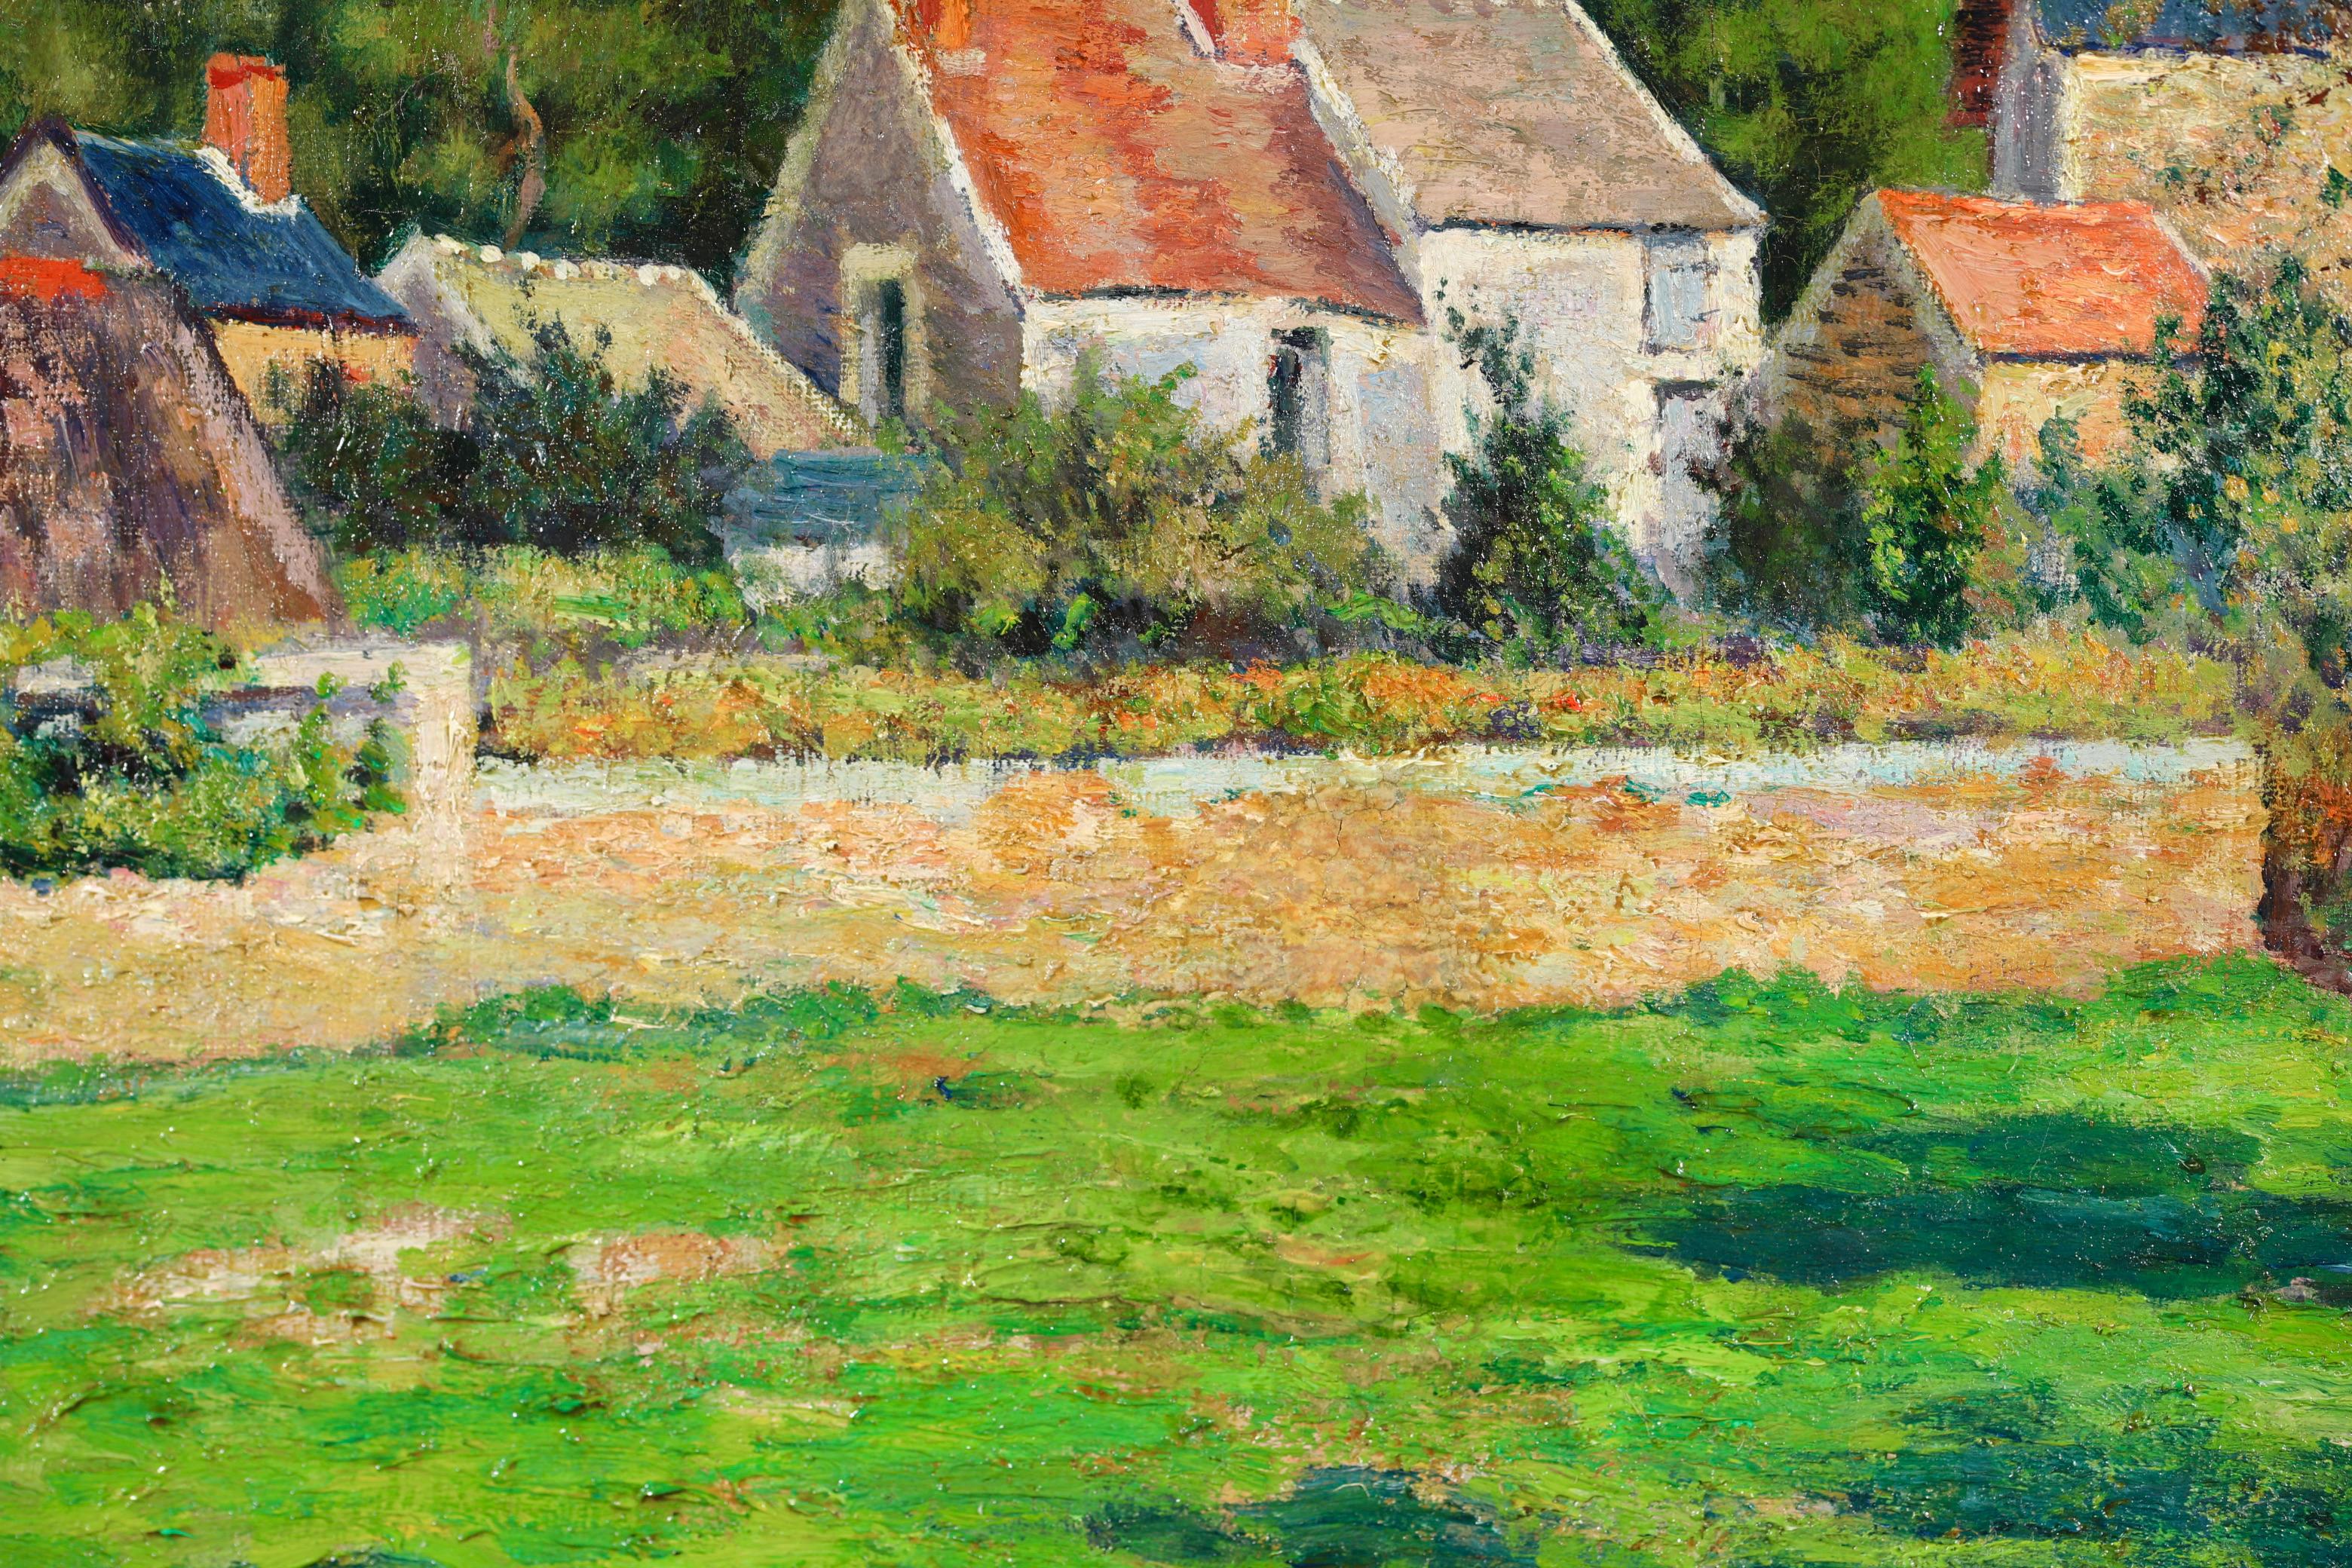 La Ferme - Impressionist Landscape Oil Painting by Victor Vignon 8